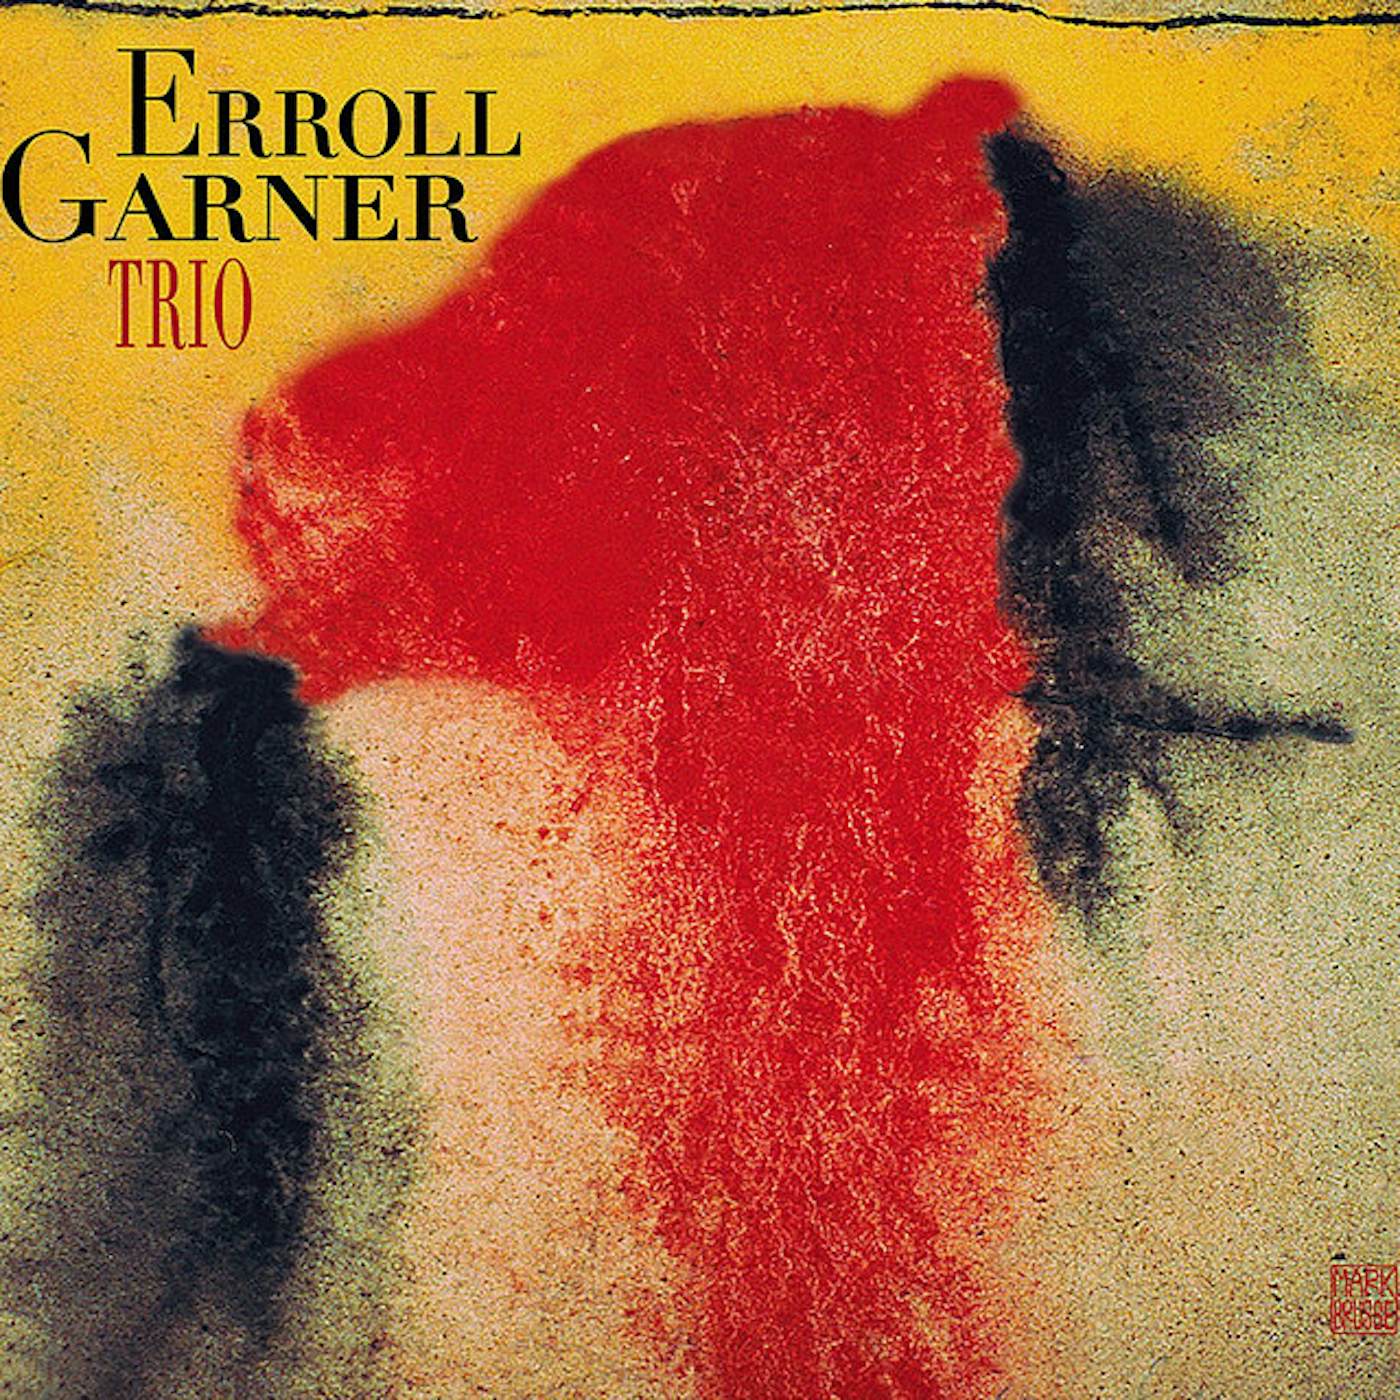 Erroll Garner Trio Vinyl Record